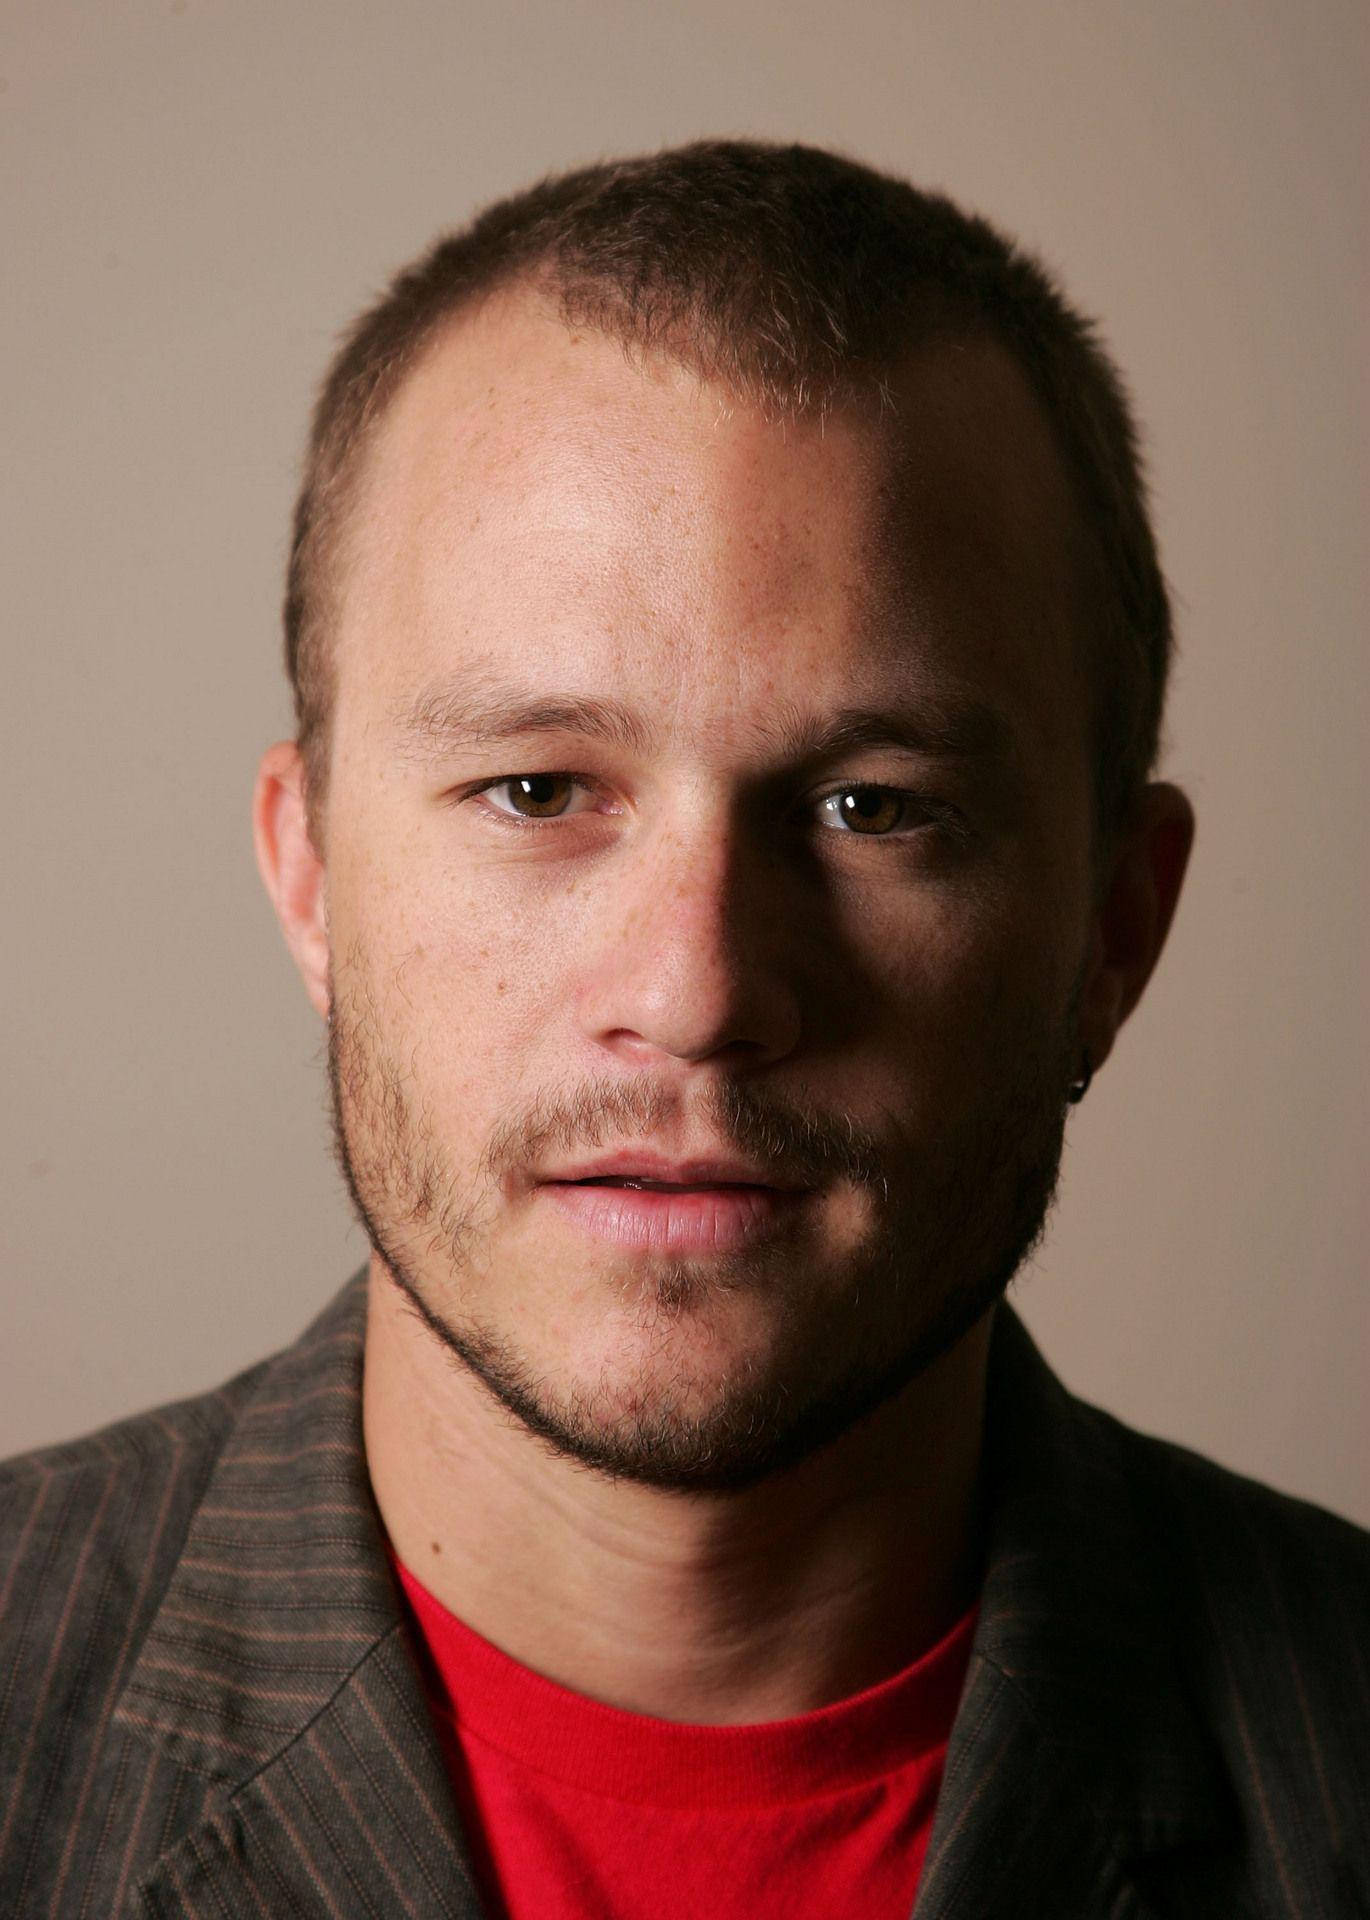 Heath Ledger Portrait